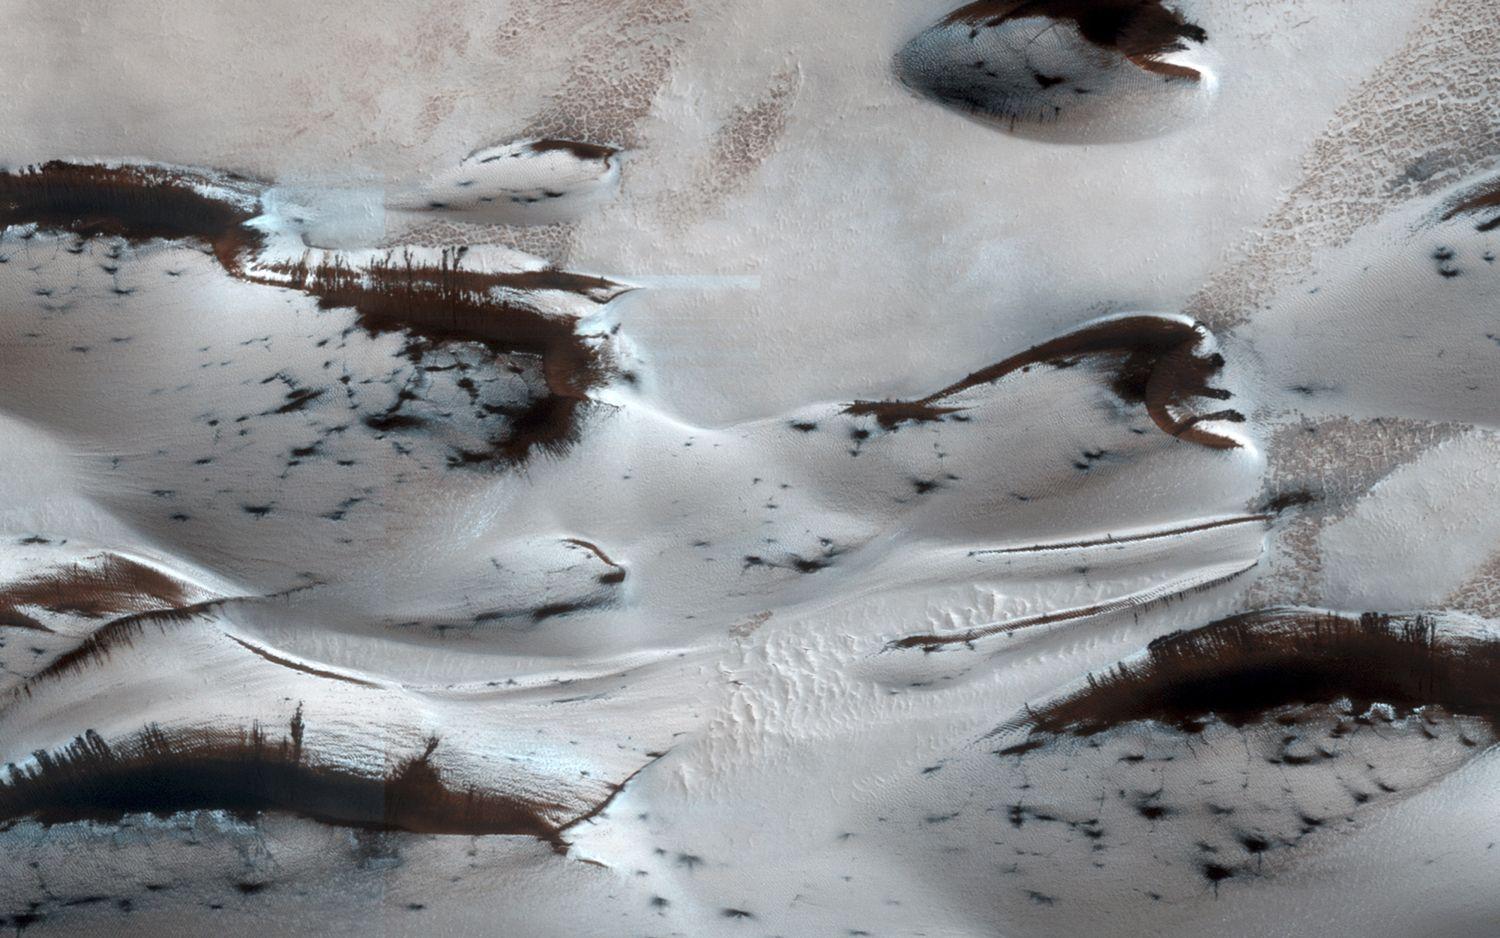 Homokdűnék a Mars északi sarkán a NASA Mars Reconnaissance Orbiter szondájának tavalyi felvételén - nem embernek való vidék